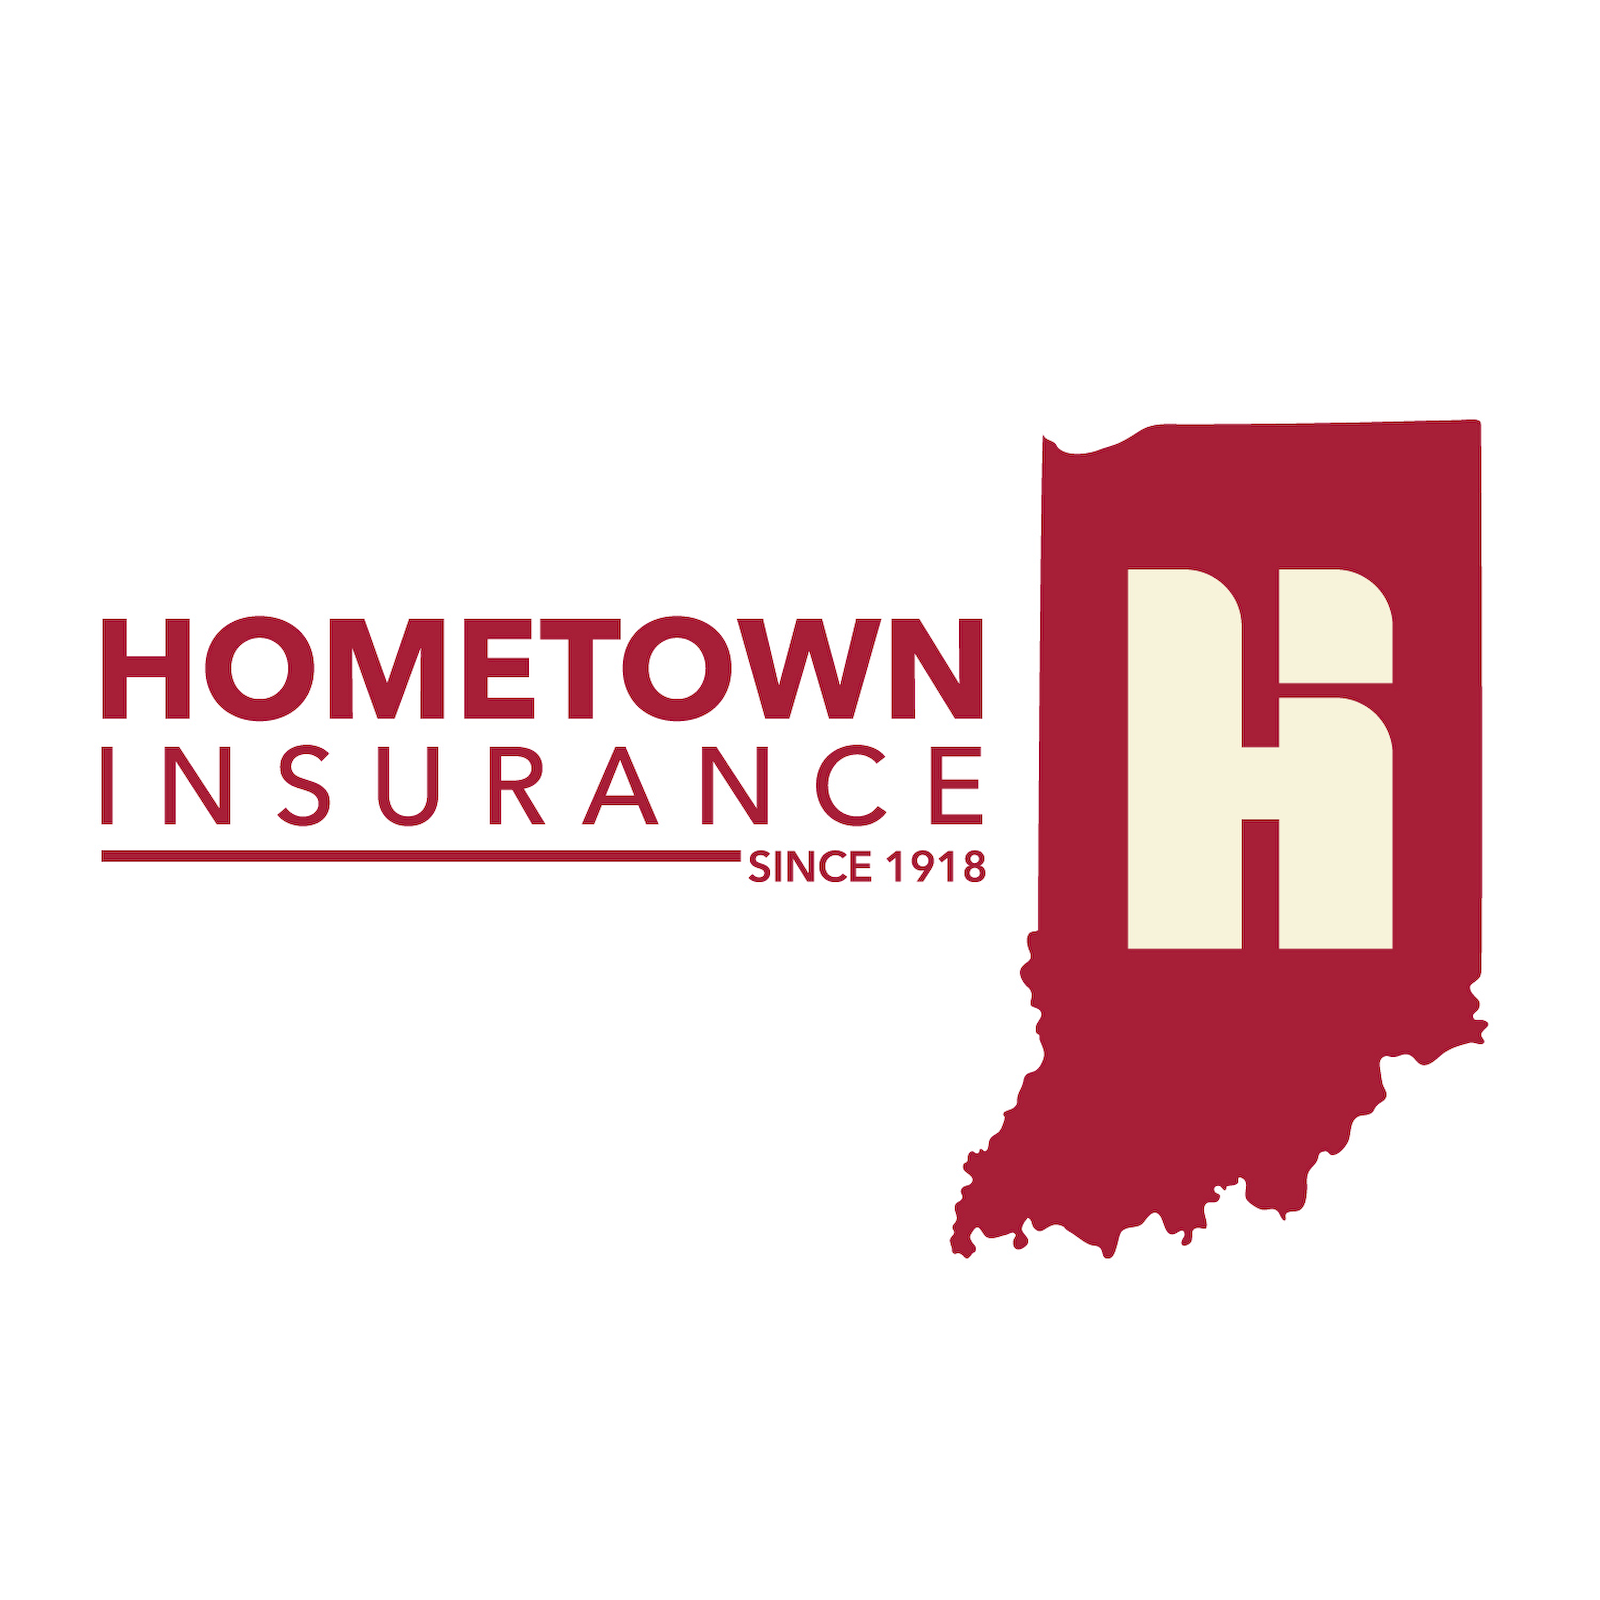 Hometown Insurance